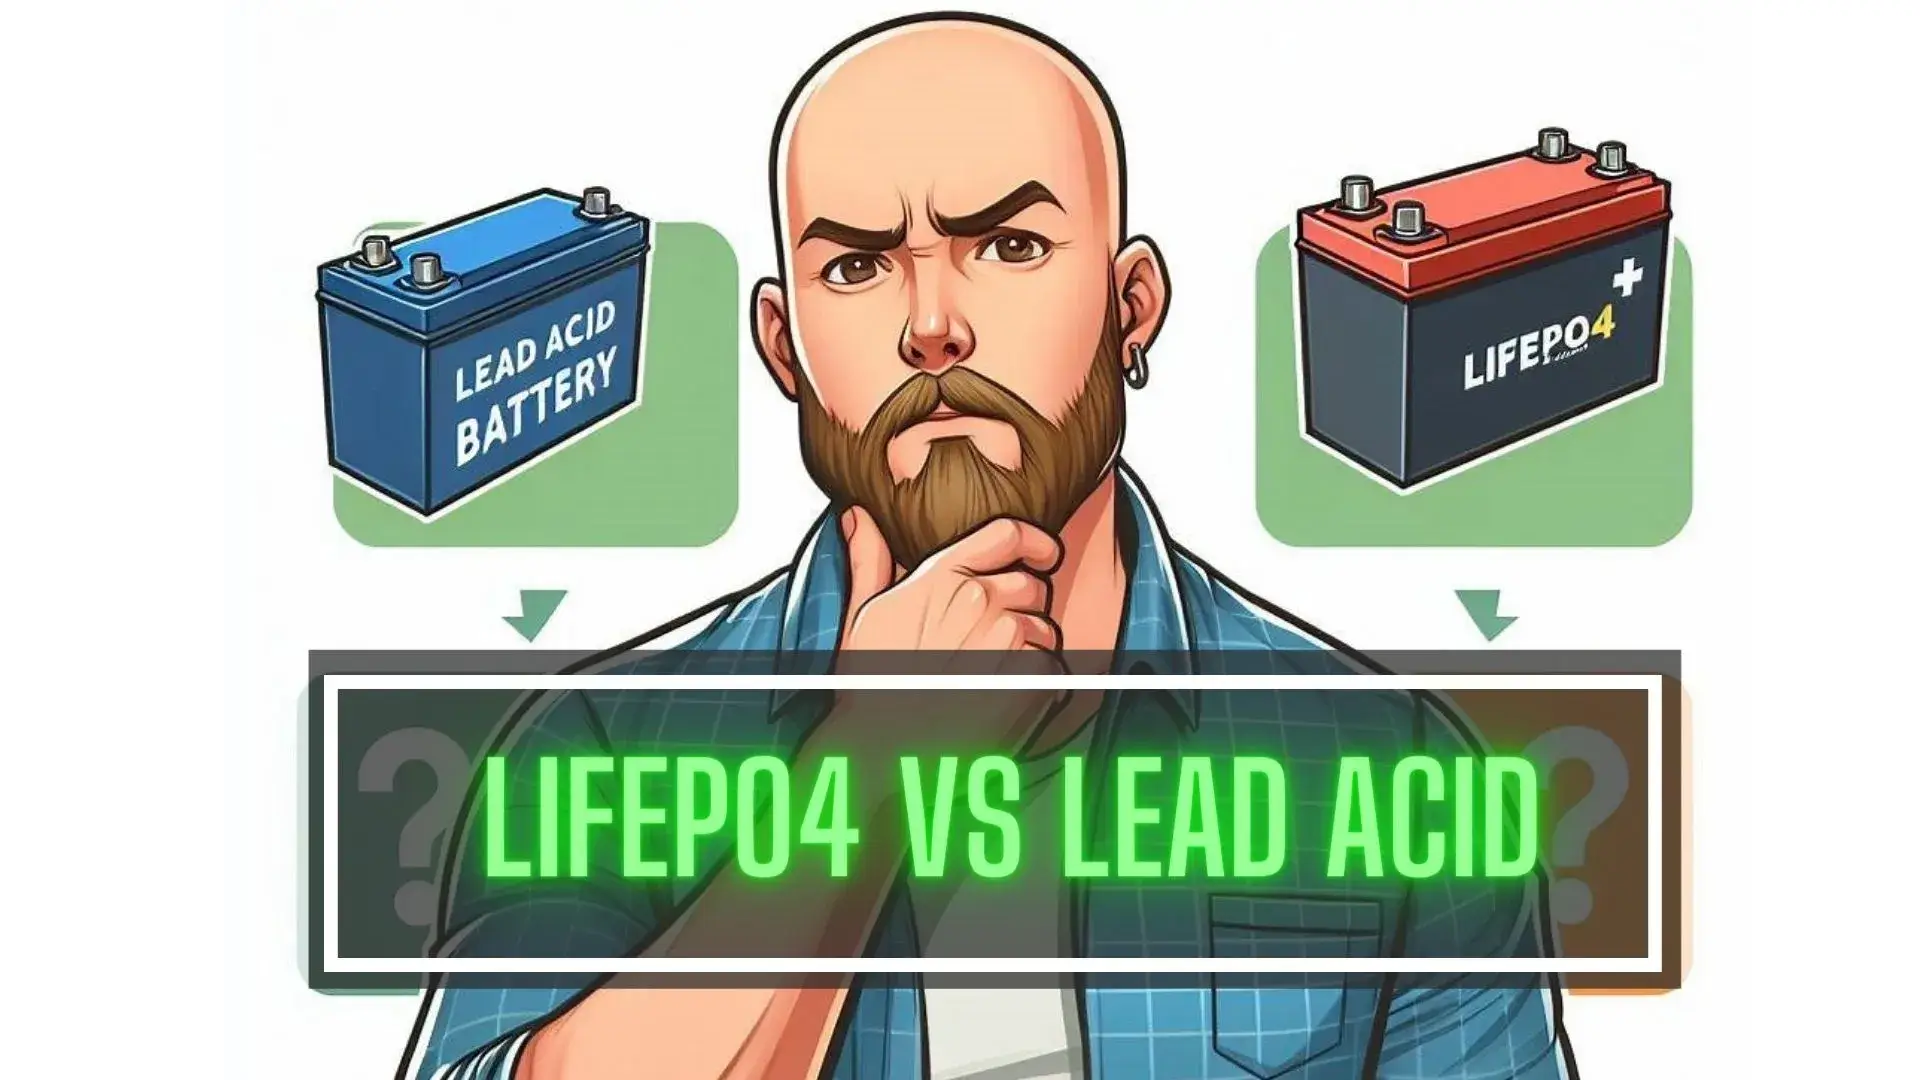 LiFePo4 vs Lead Acid Batteries